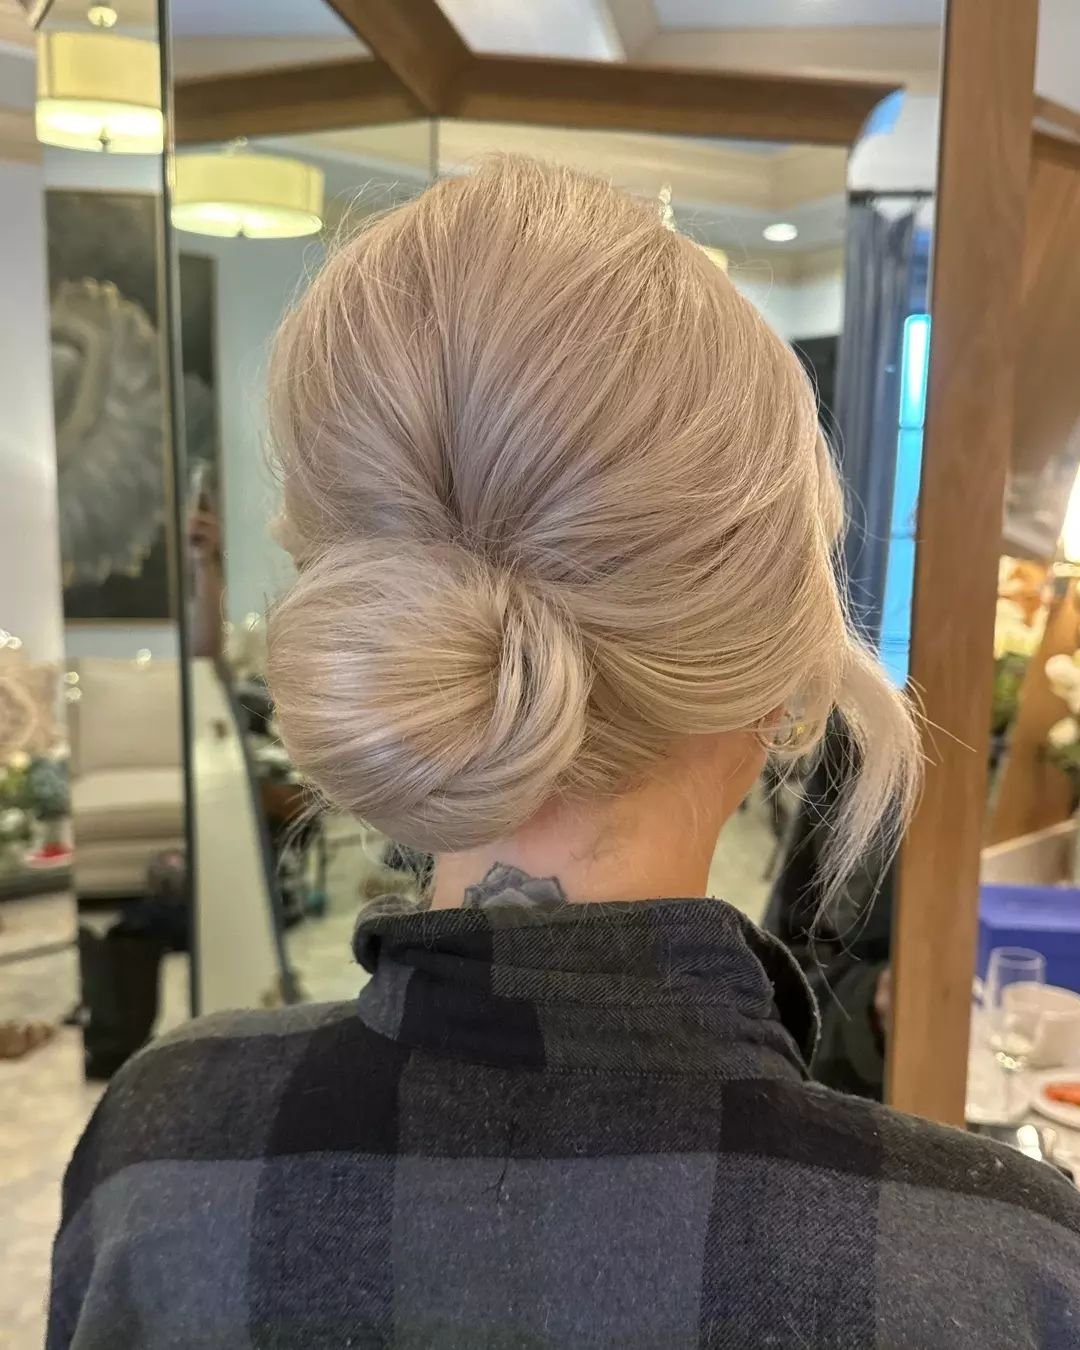 We love a stunning sleek bun&nbsp;🙌✨
.
.
.
#sleekbun #updo #blondeupdo #eventhair #bridalhair #detroitweddings #travelbeautyteam #themakeuploft #hairandmakeupteam